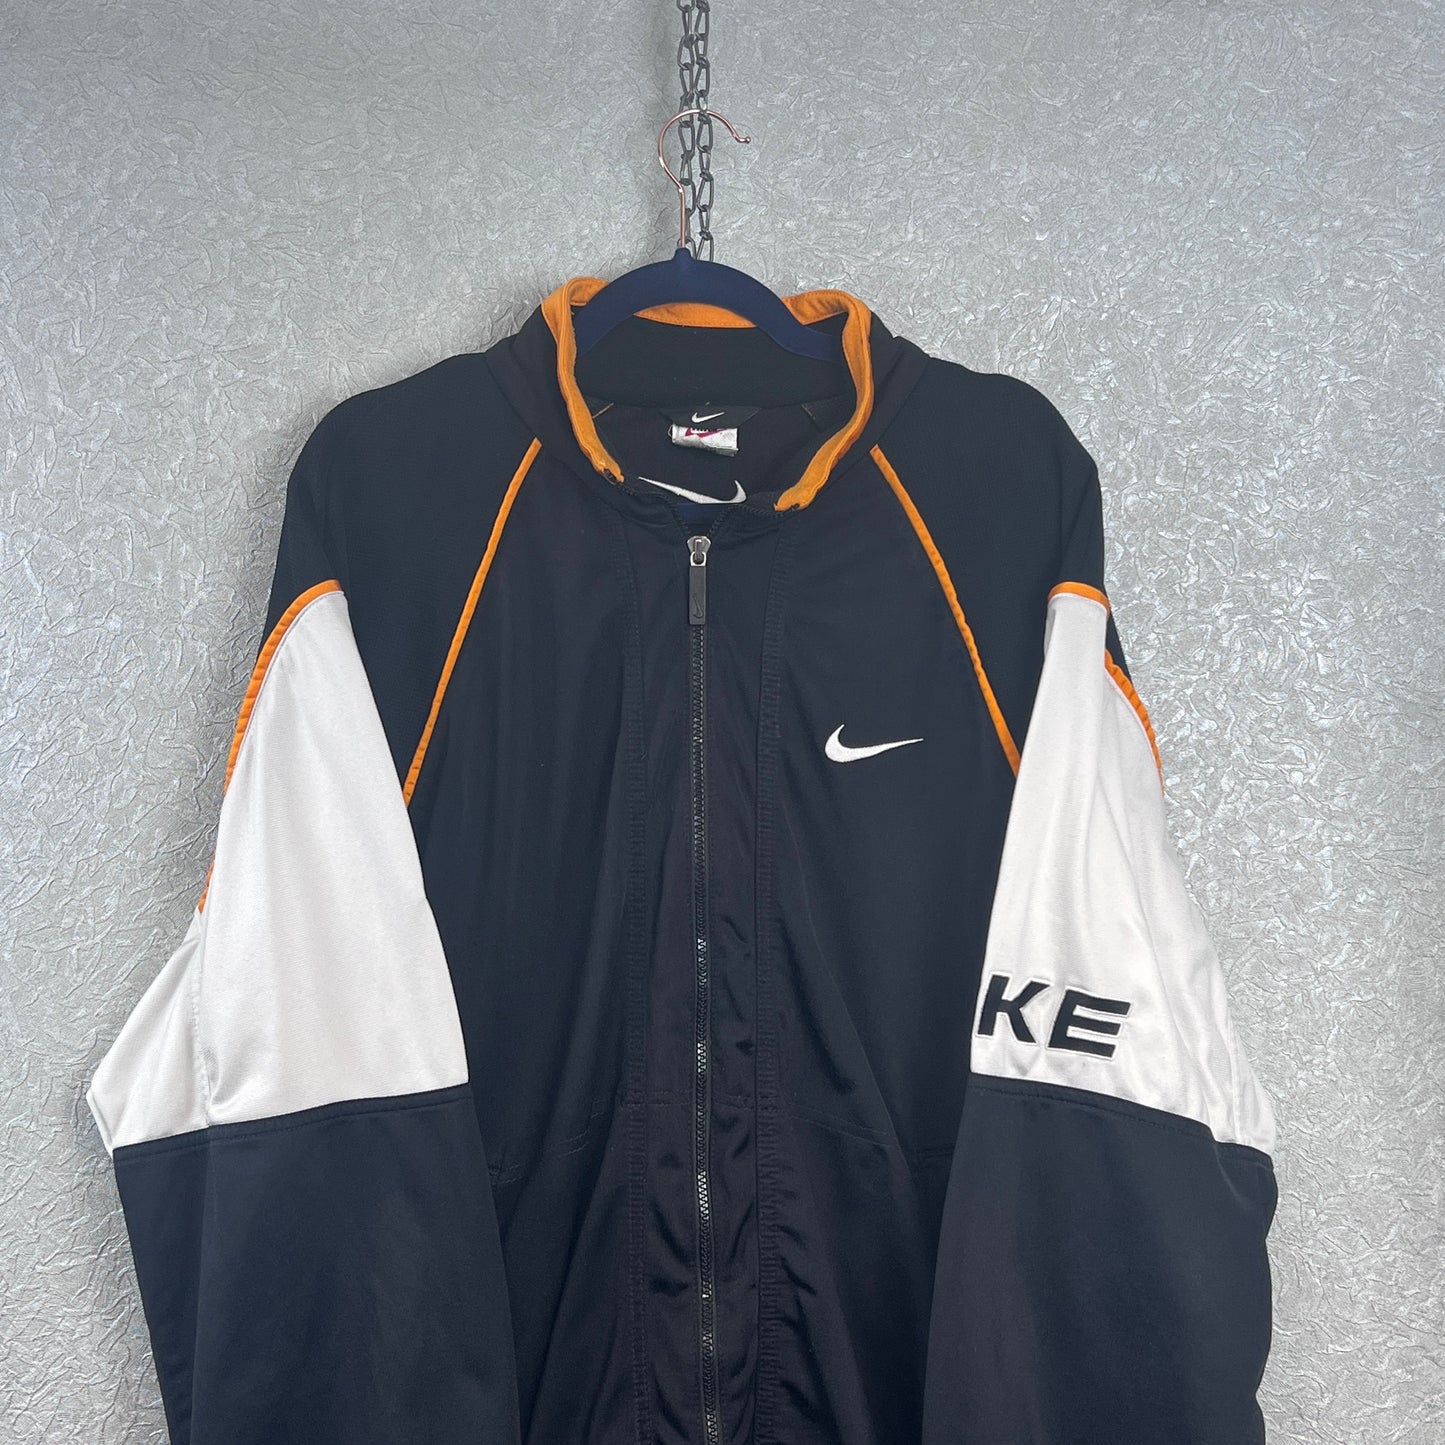 Vintage Nike Spellout Trainingsjacke X-Large